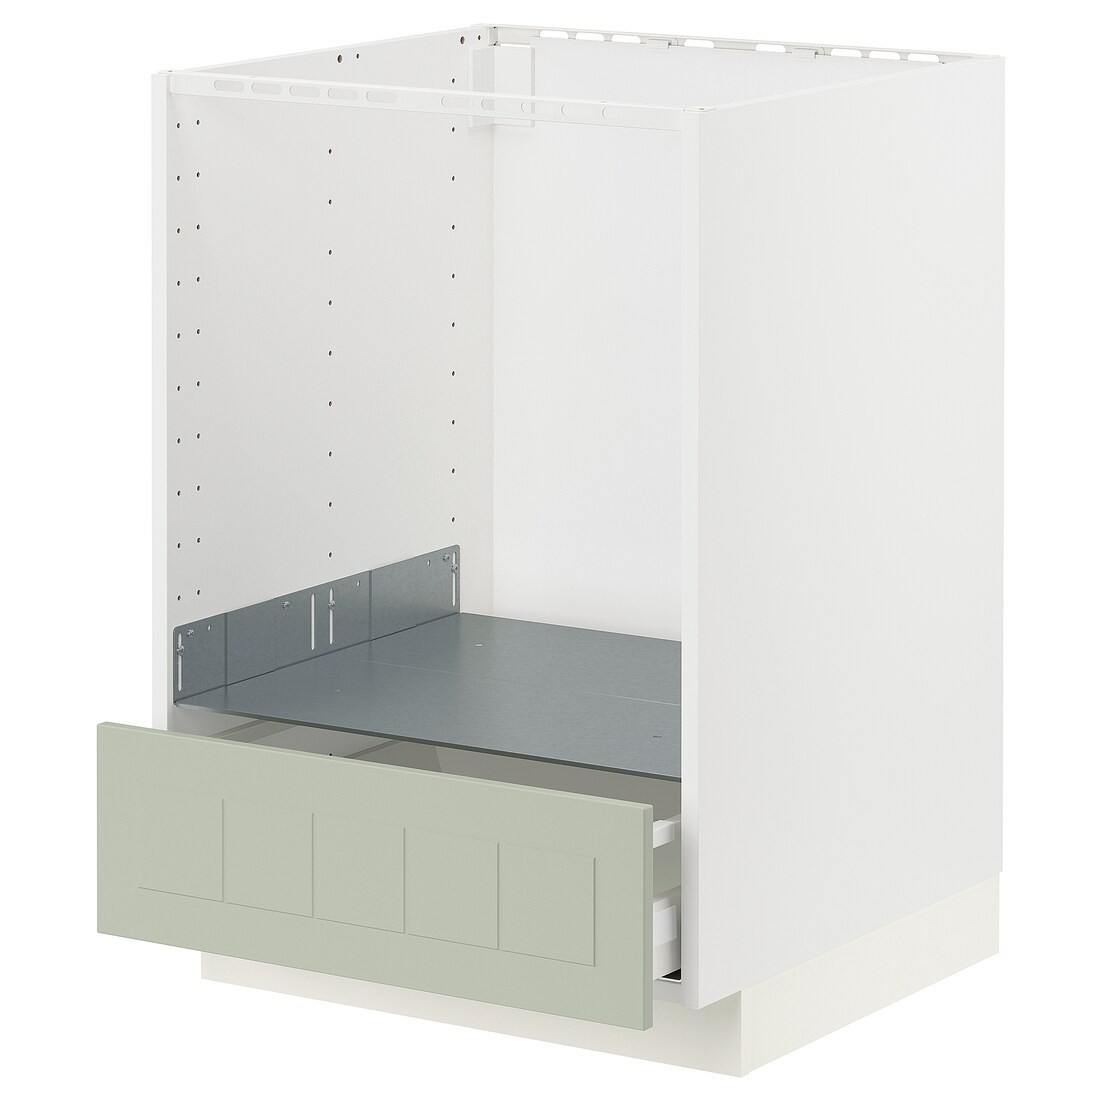 IKEA METOD МЕТОД / MAXIMERA МАКСИМЕРА Шкаф под духовку с ящиком, белый / Stensund светло-зеленый, 60x60 см 19487195 | 194.871.95